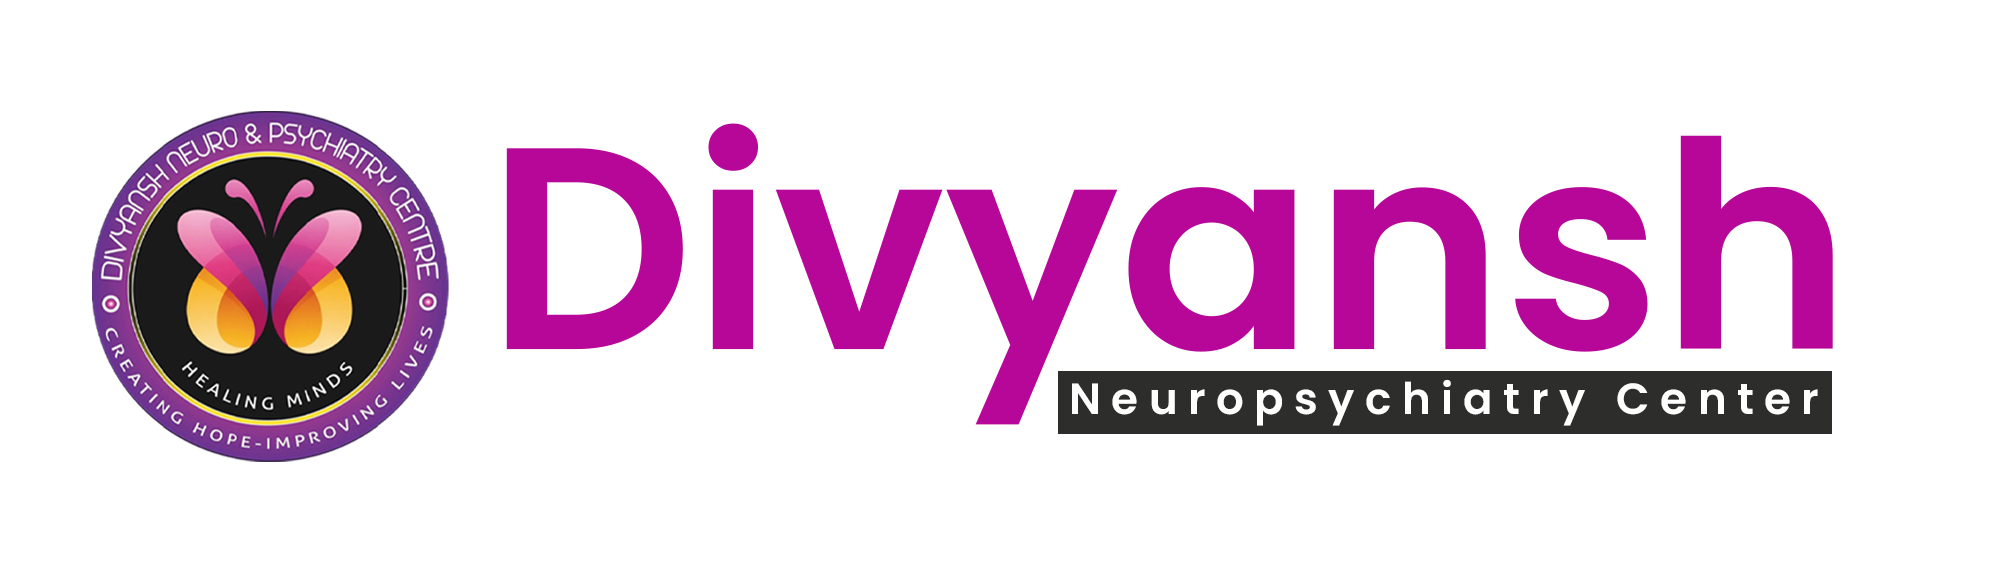 Divyansh Neuropsychiatry Center Logo